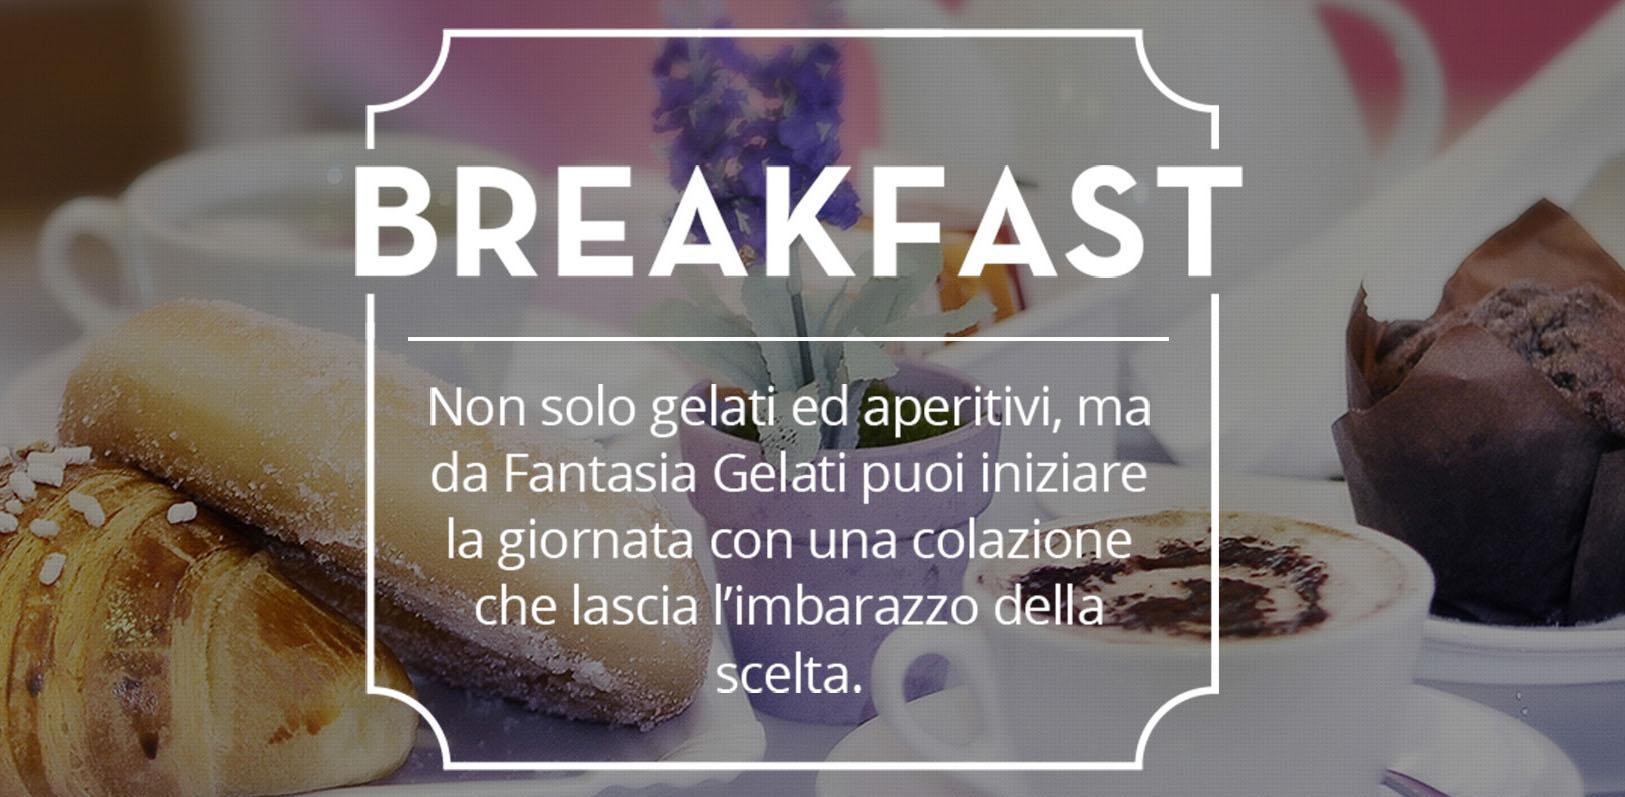 Fantasia Gelati - Colazione Breakfast